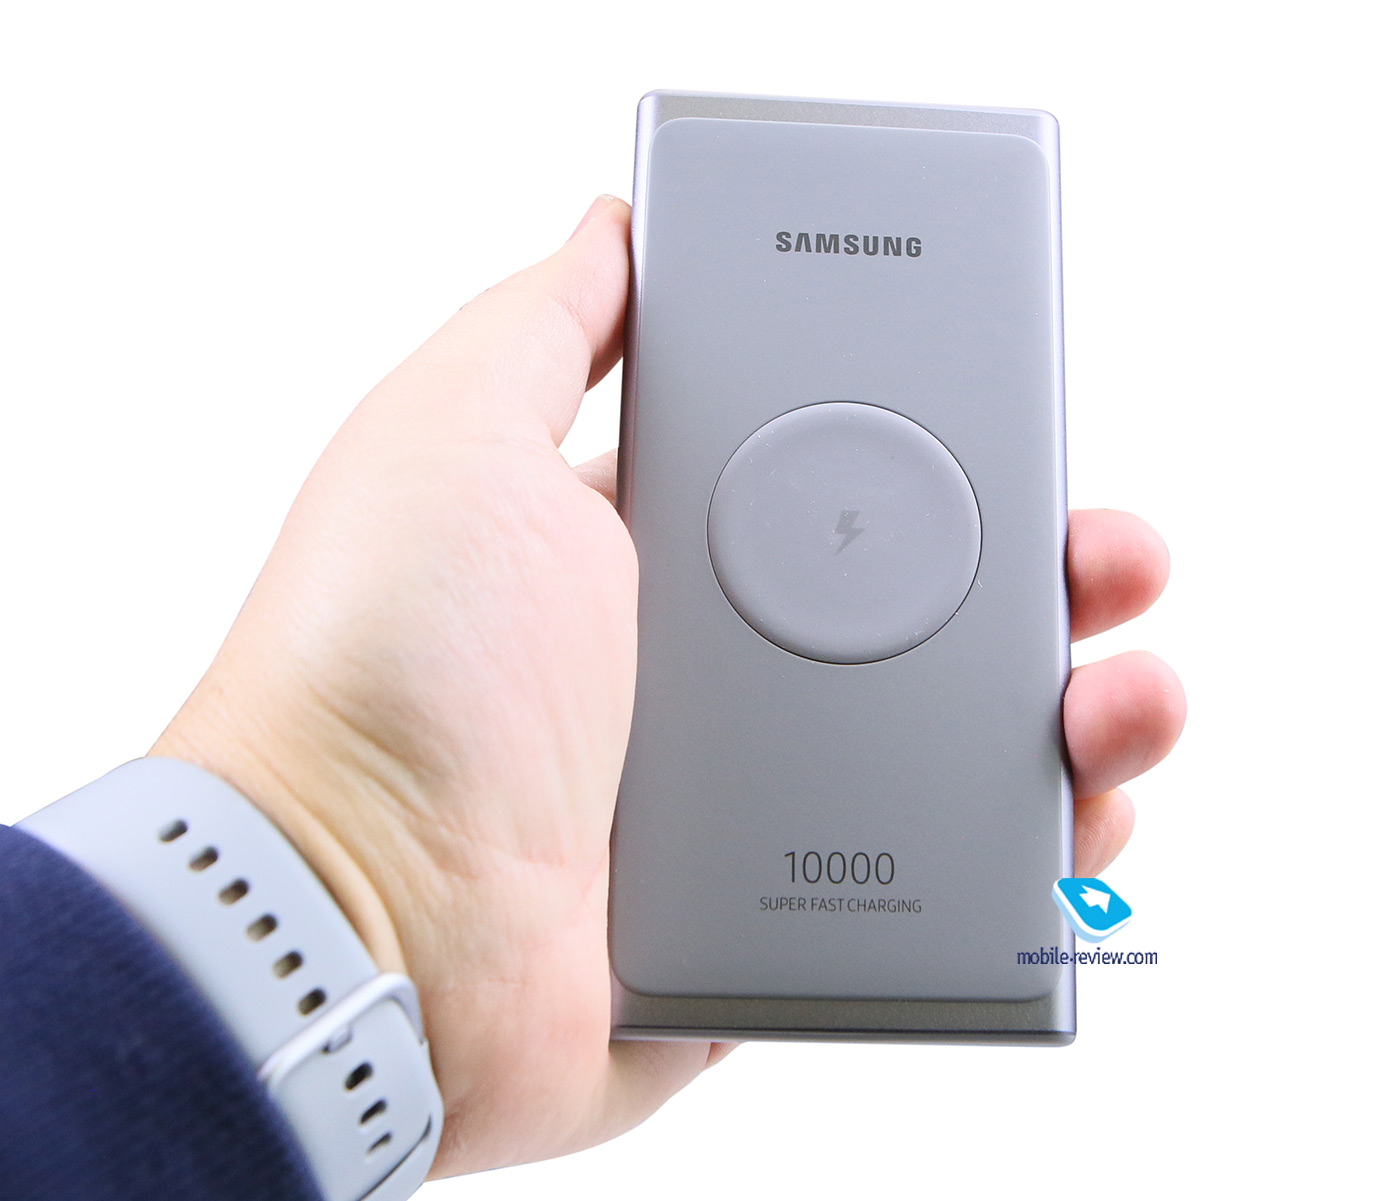    Samsung     (EB-P3300/U3300)